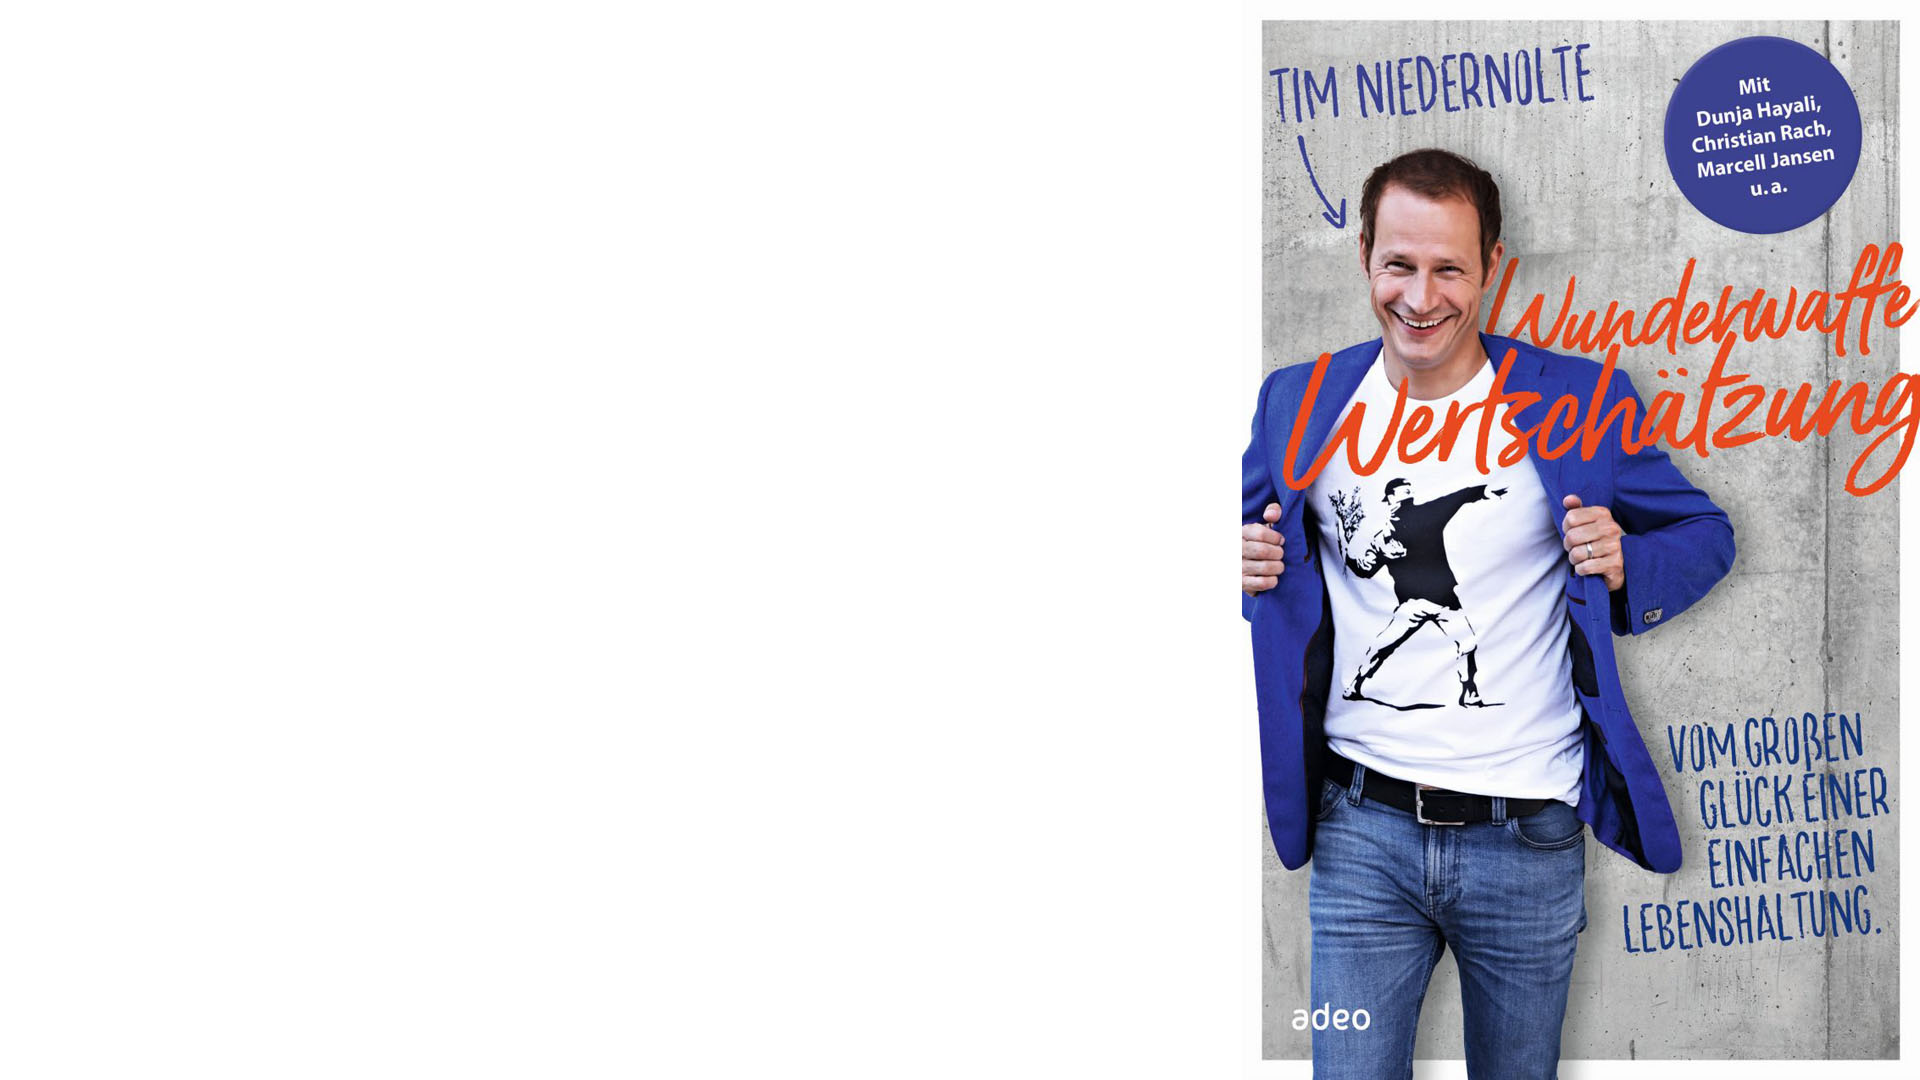 Tim Niedernolte, Jahrgang 1978, ist Moderator für die ZDF-Sendungen „drehscheibe“ und „hallo deutschland“, zuvor war er bei Sky und er moderierte die Kindernachrichten „logo!“. Sein Buch „Wunderwaffe Wertschätzung“ erschien bei adeo, 208 Seiten, 18 Euro, ISBN 9783863341817.